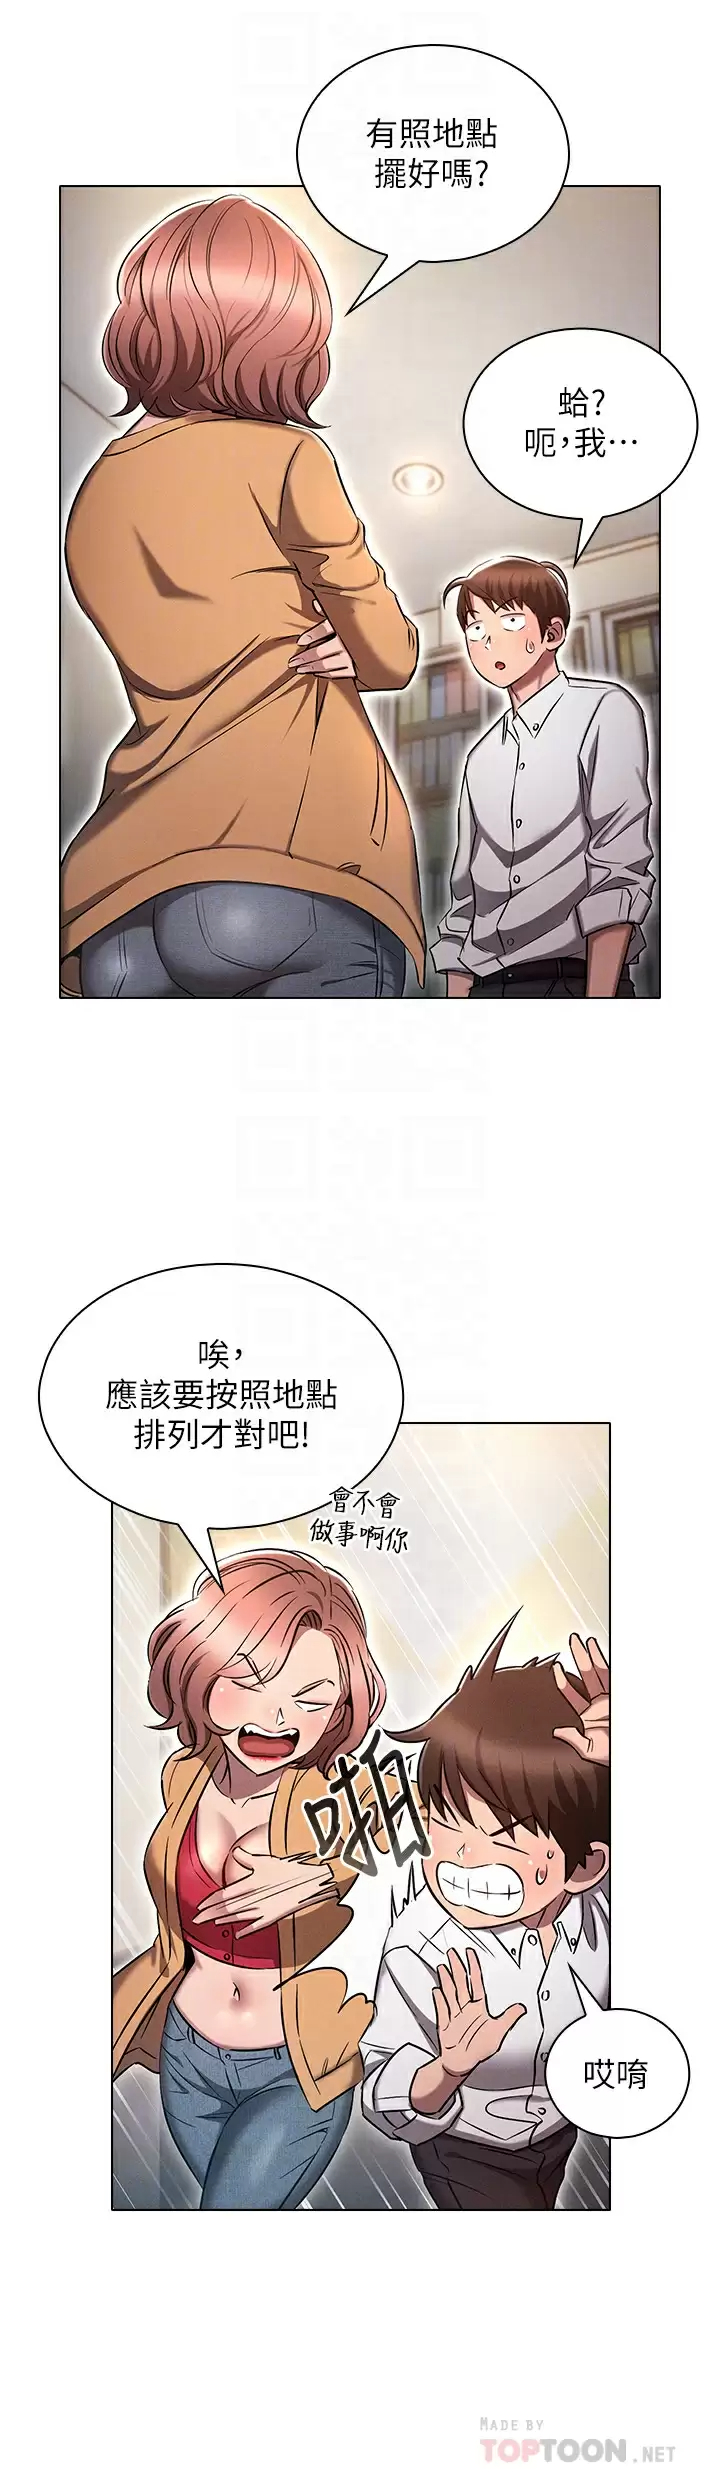 韩国污漫画 魯蛇的多重宇宙 第8话 前辈不饶人的嘴上功夫 12